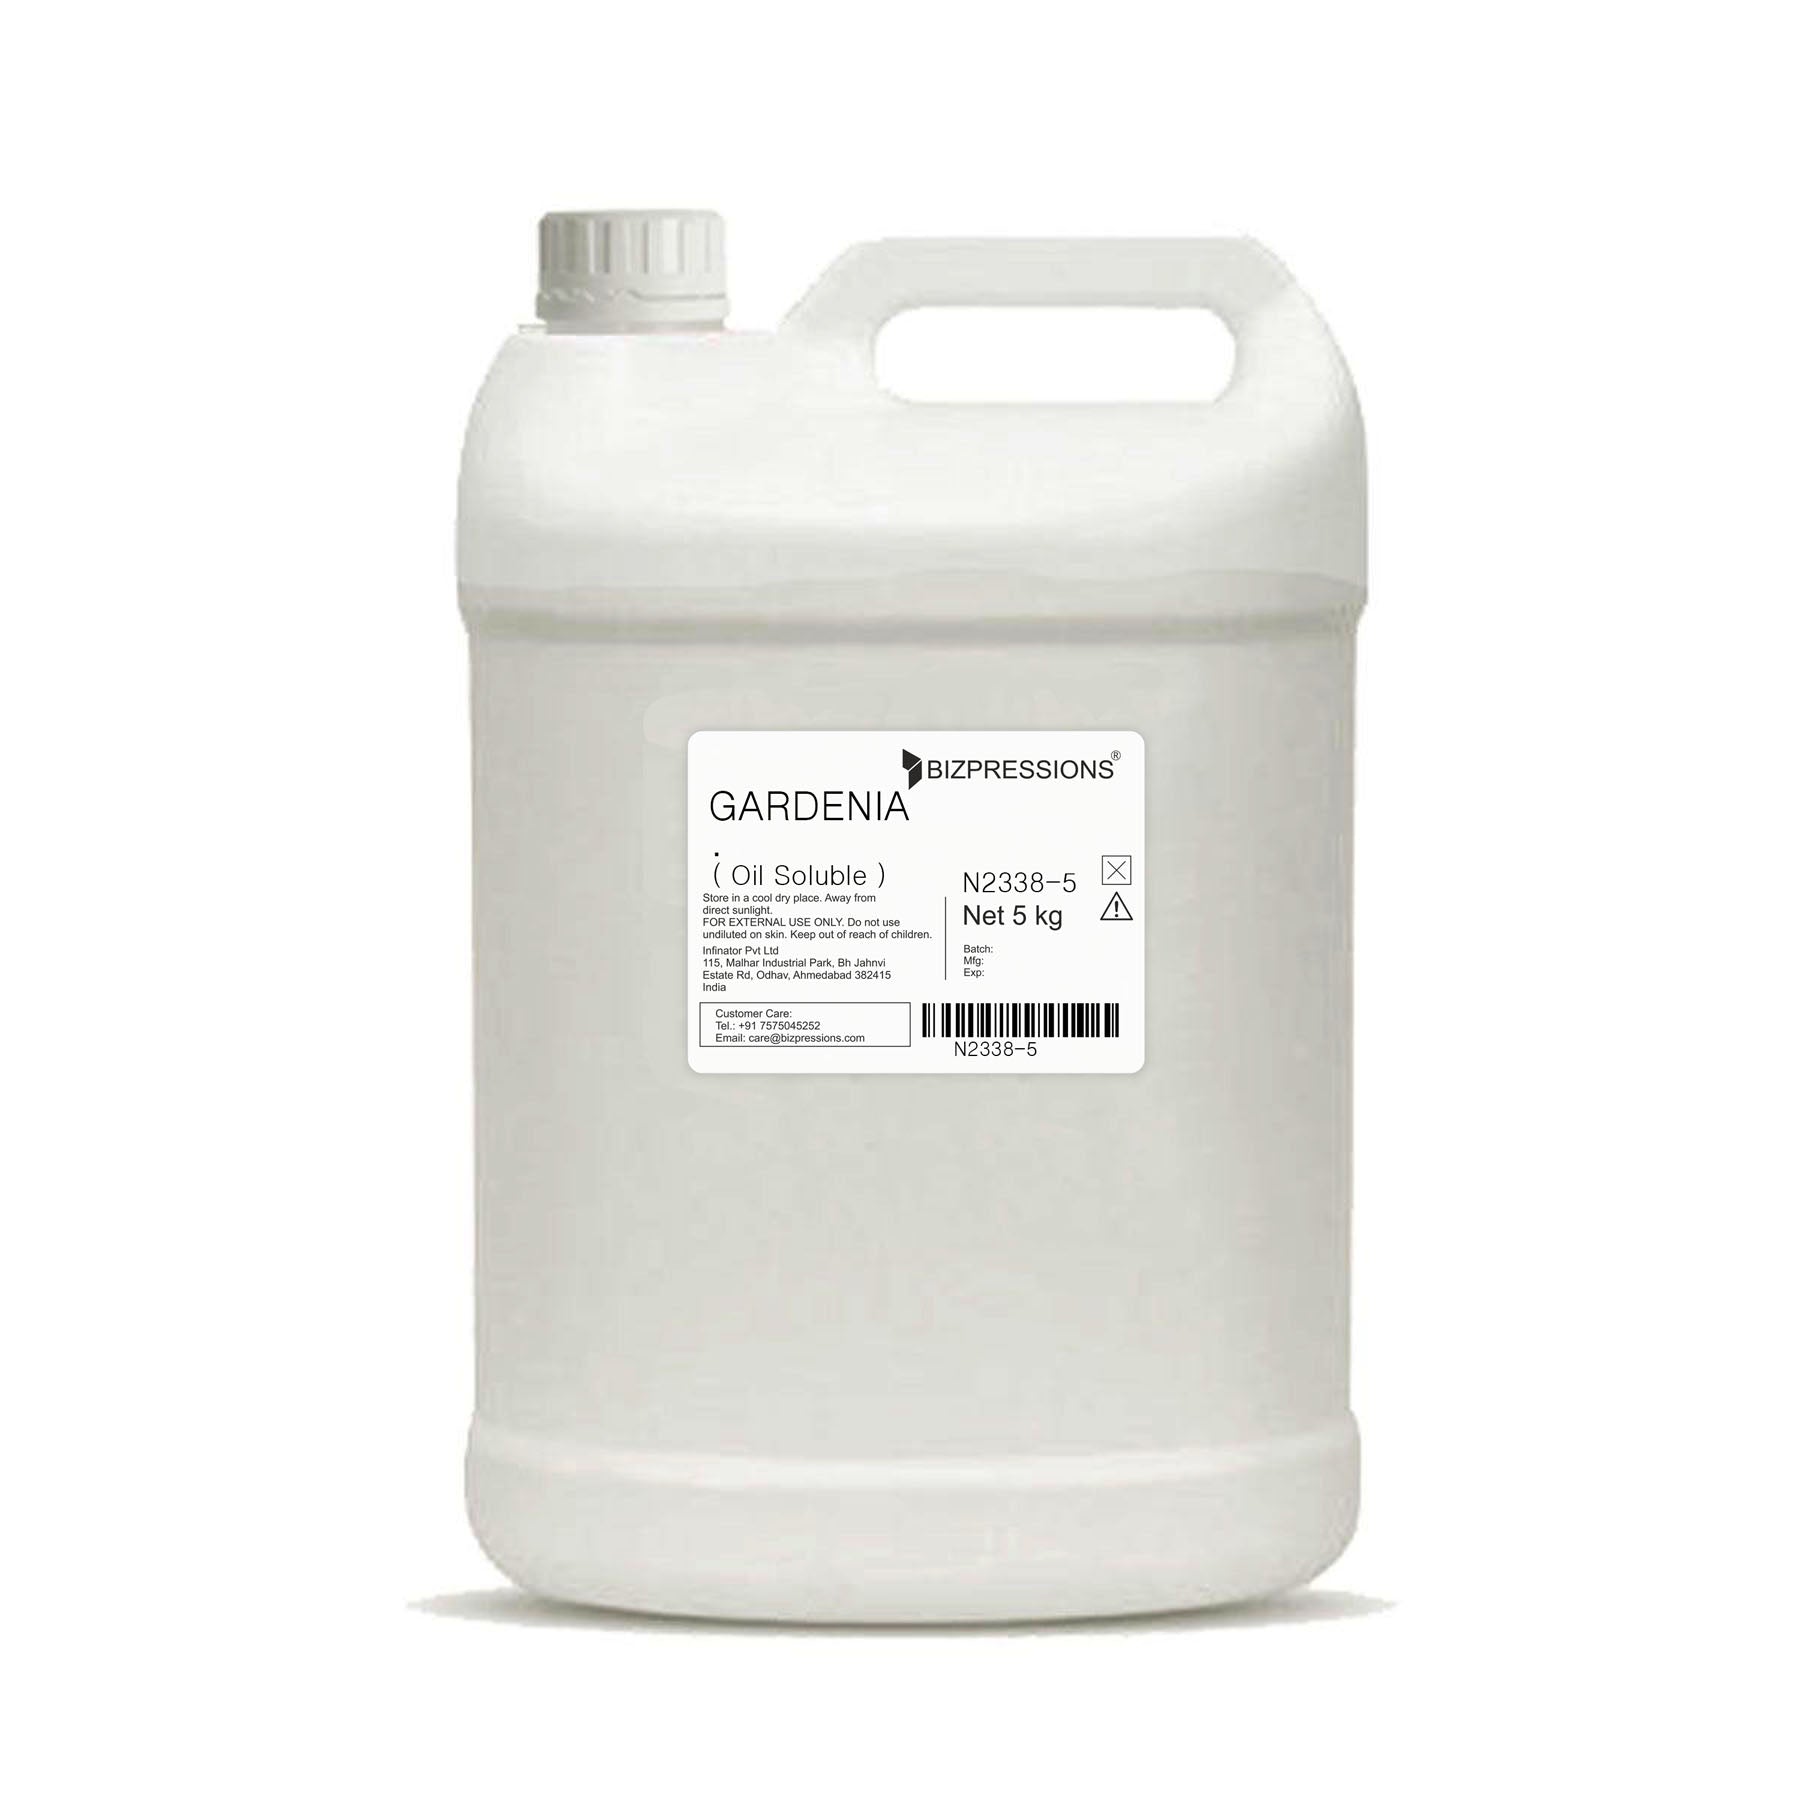 GARDENIA - Fragrance ( Oil Soluble ) - 5 kg